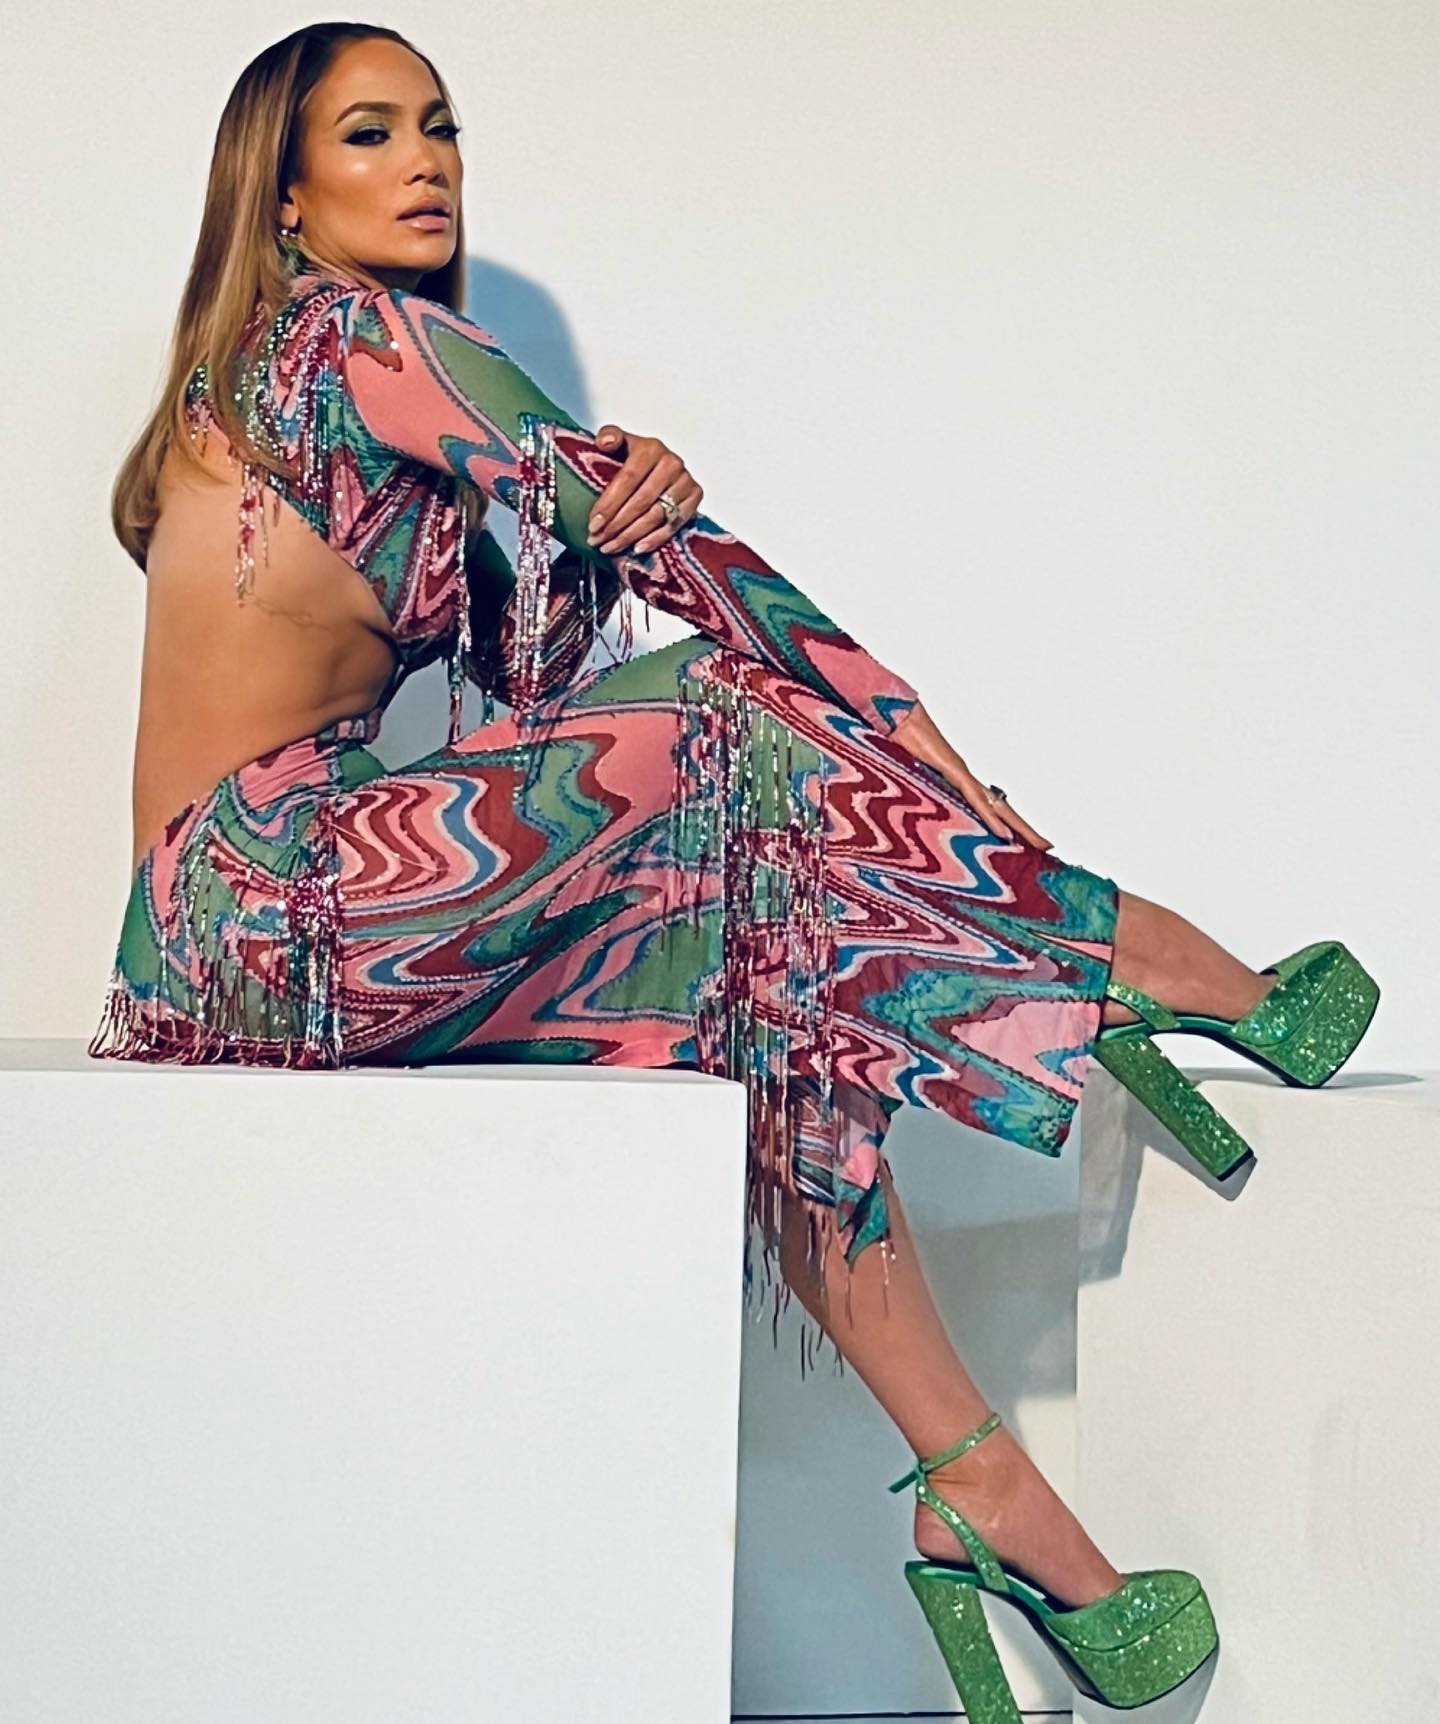 Дженнифер Лопес в платье с вырезами под грудью в стиле 70-х произвела фурор ярким образом